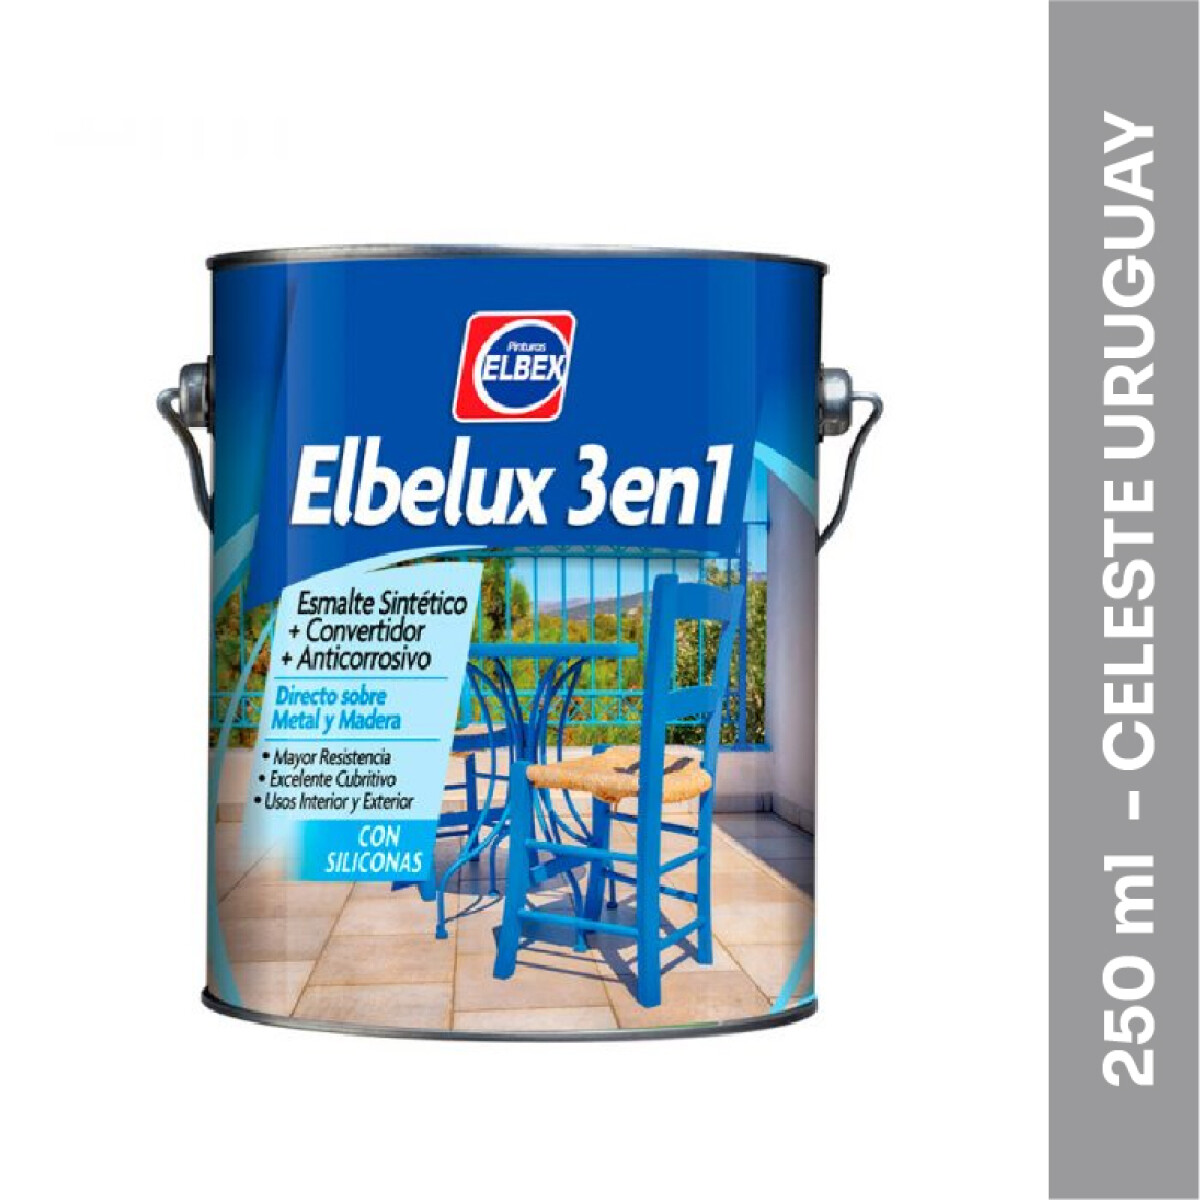 Esmalte Brillante Elbelux 3 en 1 - 250 ml - Celeste Uruguay 